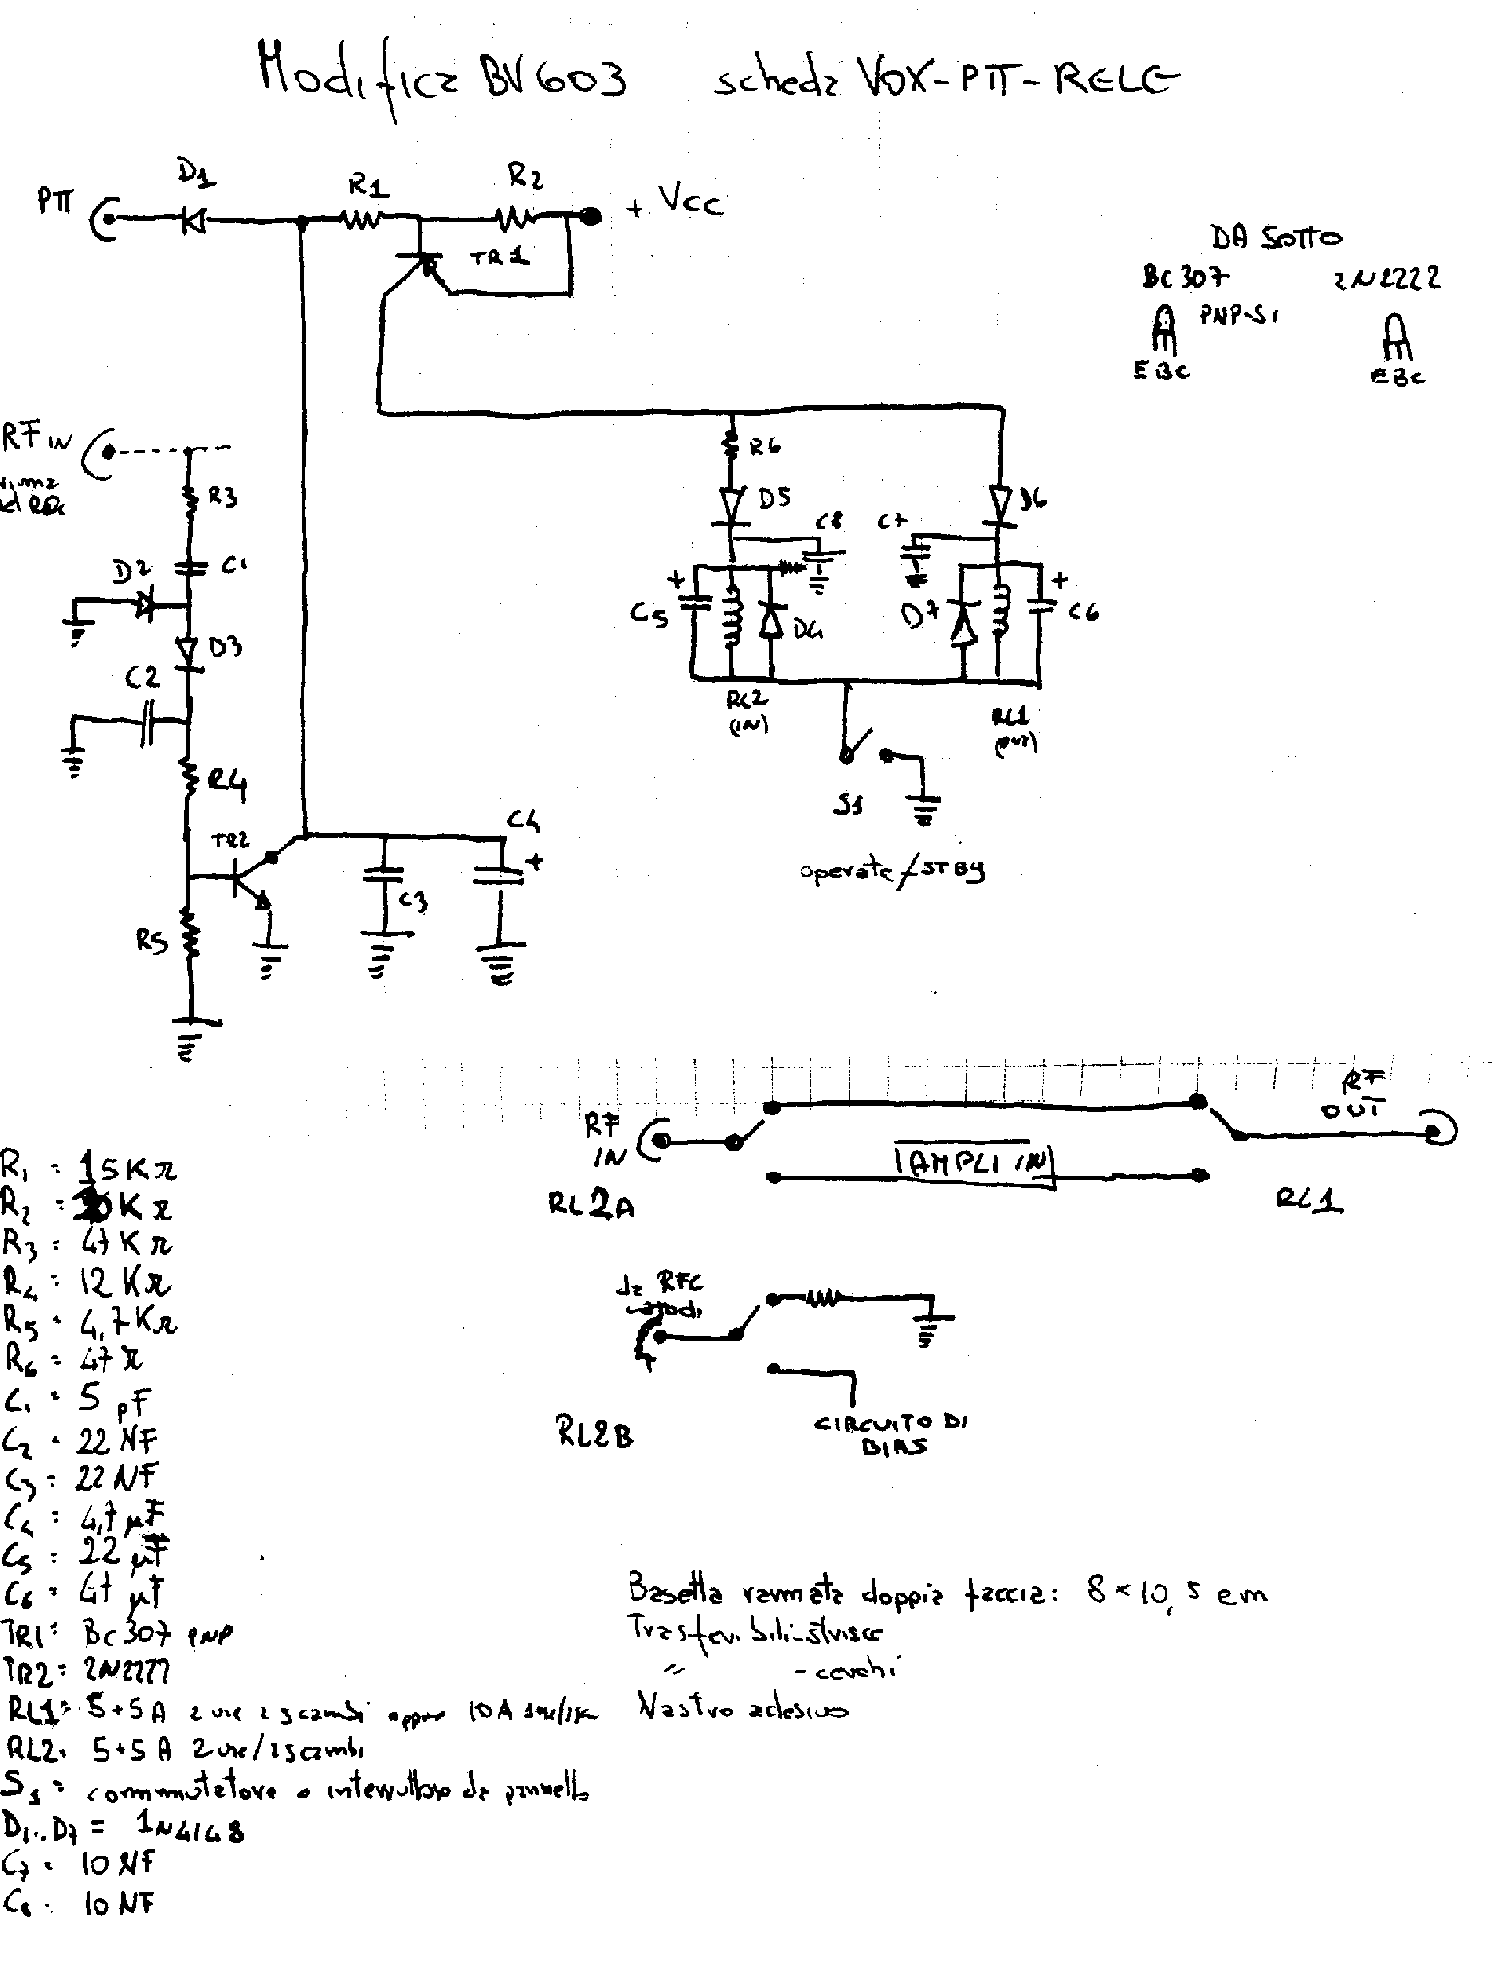 schema elettrico del circuito di commutazione e vox